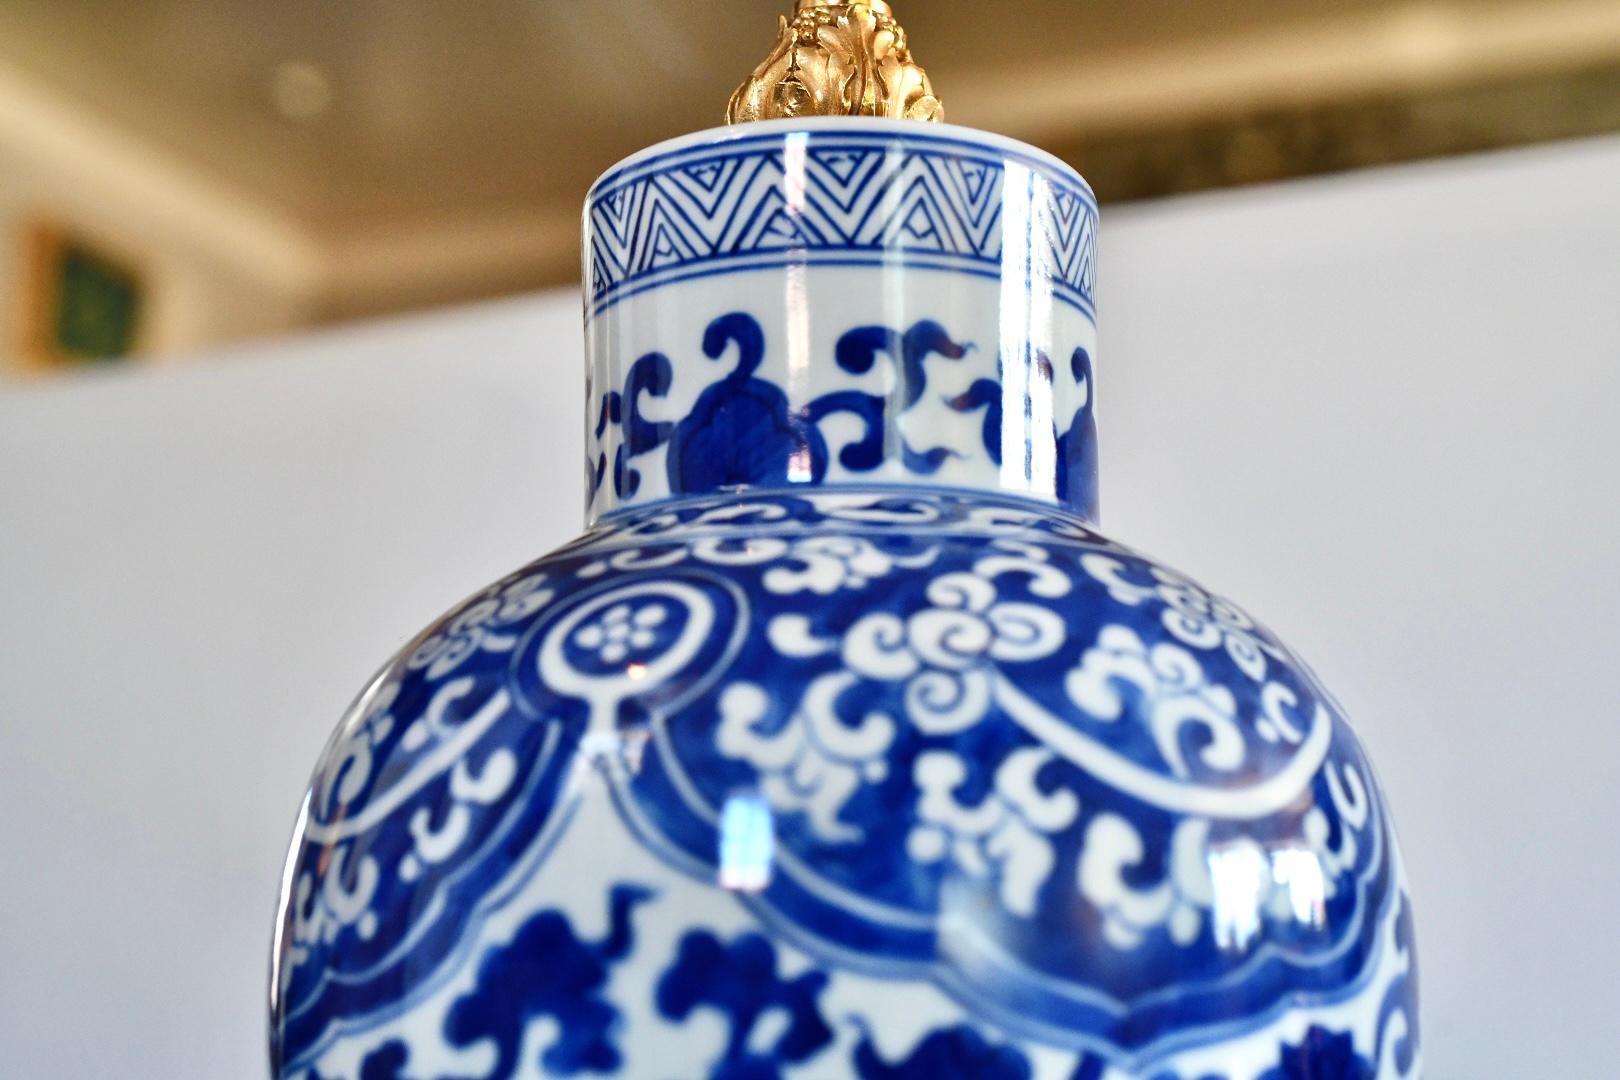 Paar Lampen aus blauem und weißem Porzellan mit fein gegossener vergoldeter Bronze 
Basen und Dekoration, jede Lampe installiert zwei e26 Sockel Sockel, an die Spitze der Porzellan-Vase 19 Zoll.
Lampenschirm nicht enthalten.